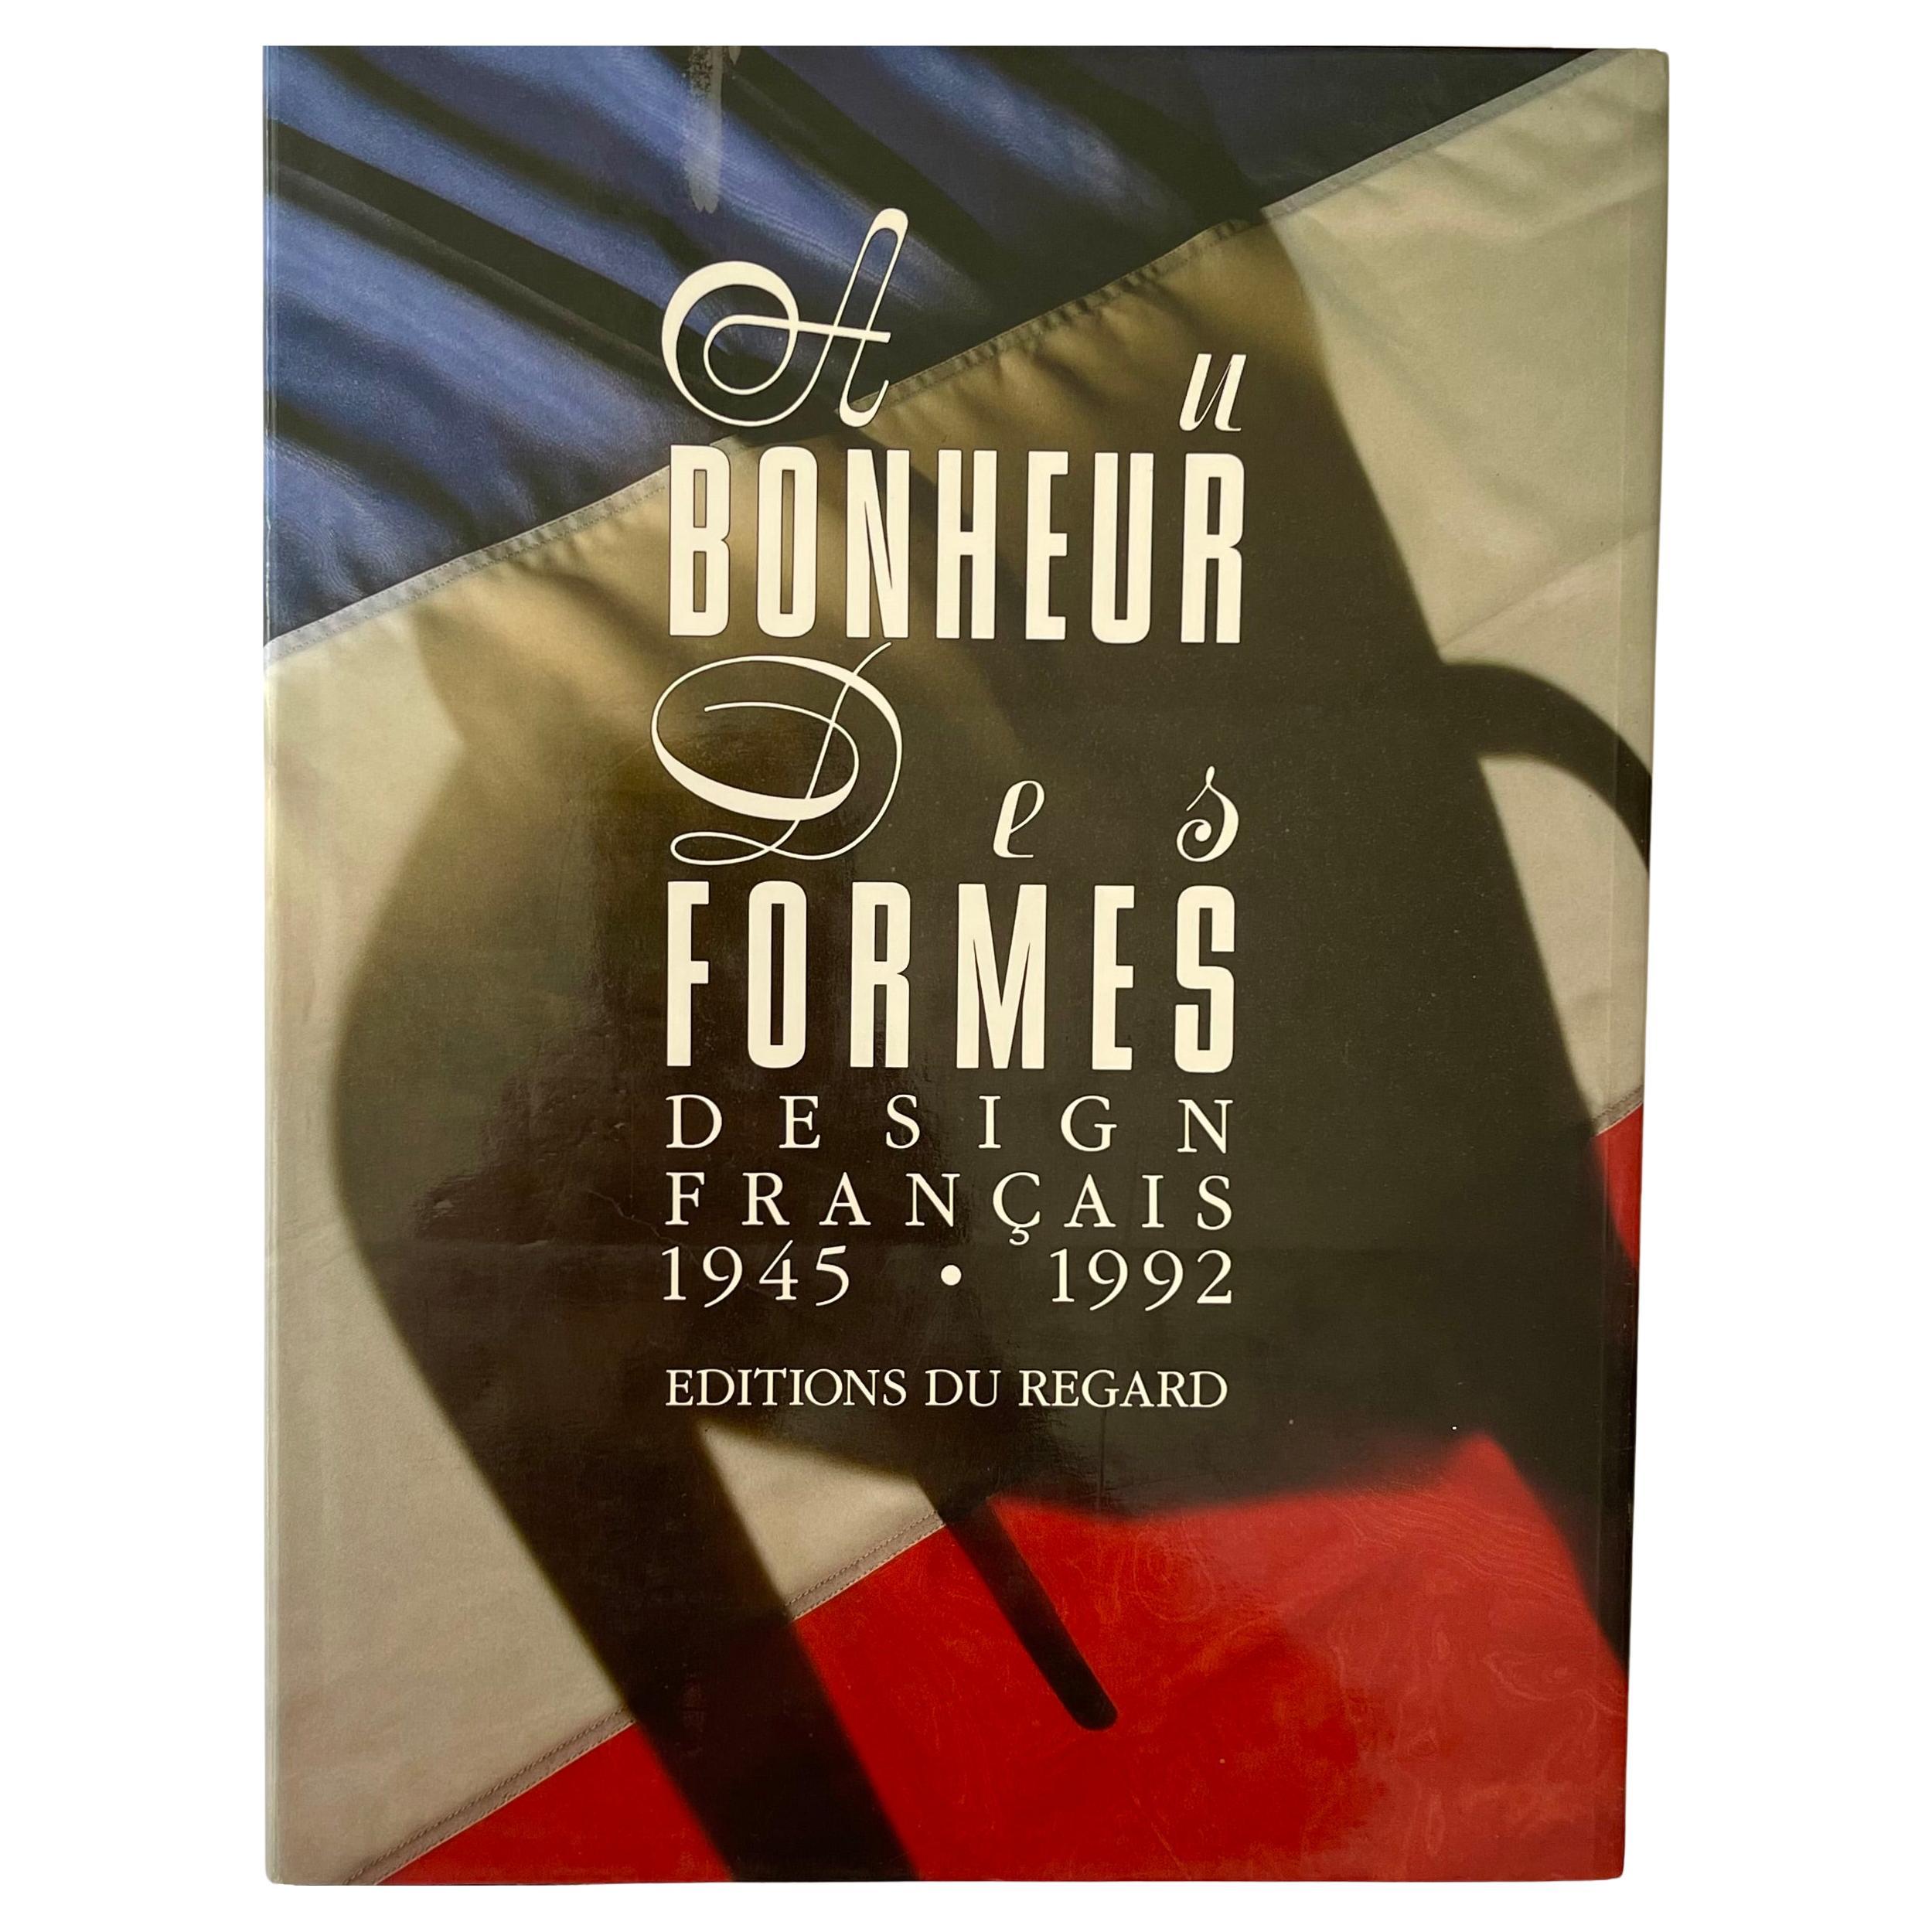 A Bonheurs des Formes Design Francais 1945-1992 1st ed. 1992